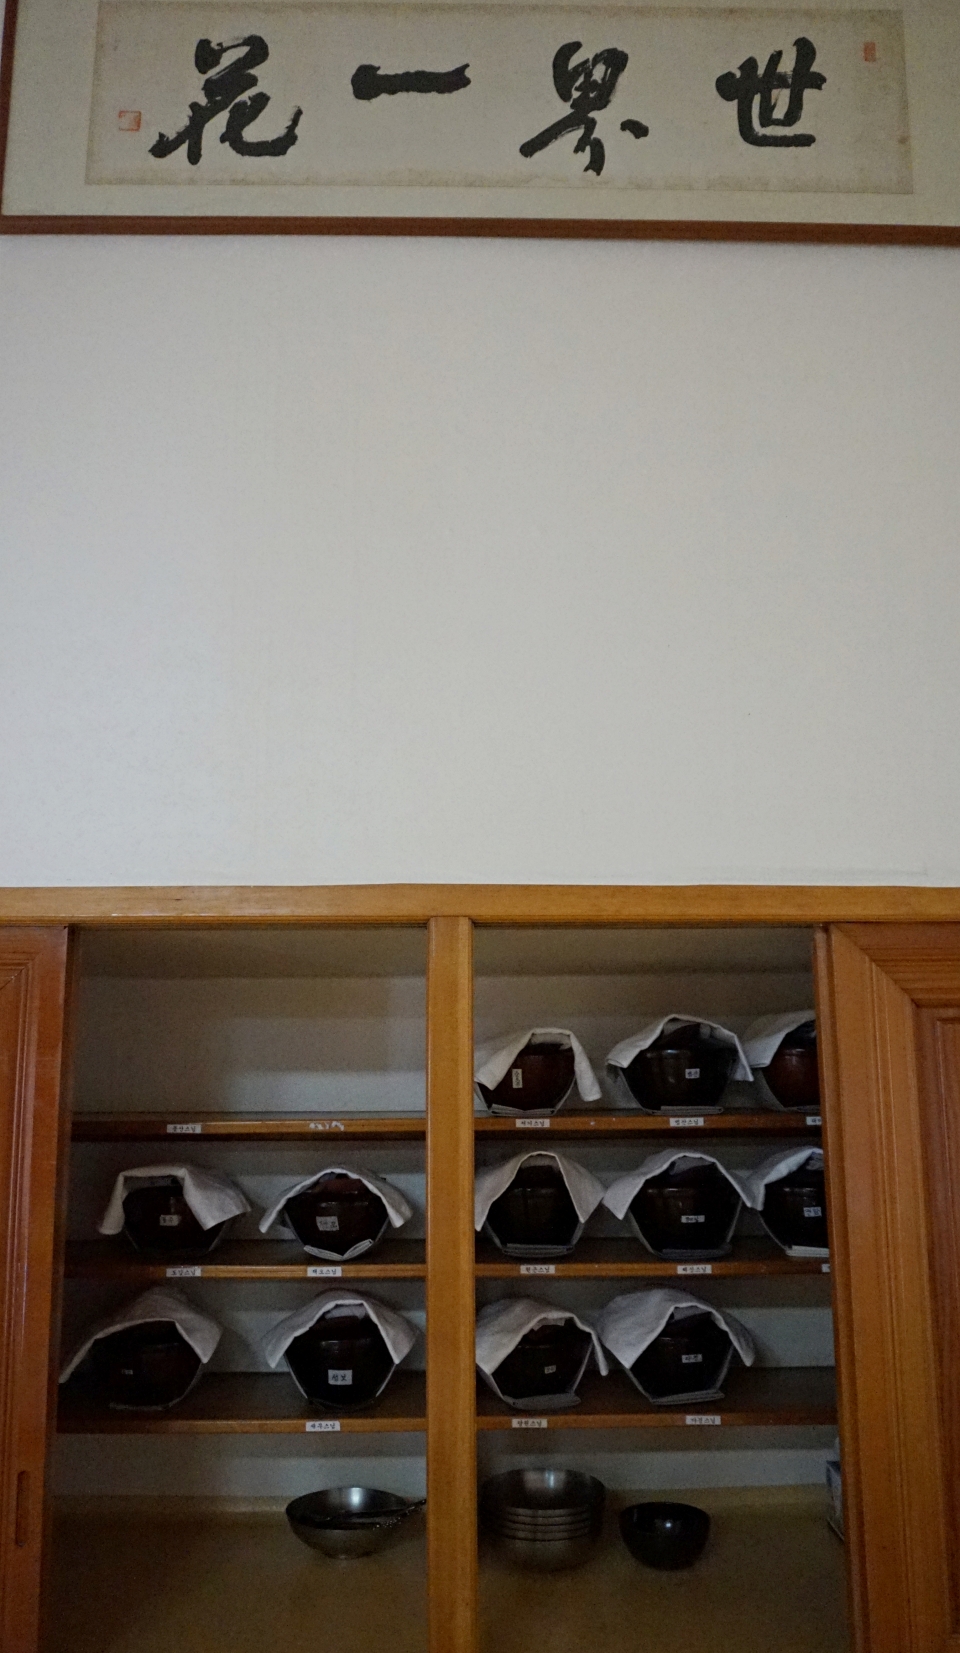 큰방에 정리되어 있는 스님들의 발우. 윗편의 '세계일화' 글씨는 만공스님이 썼다.